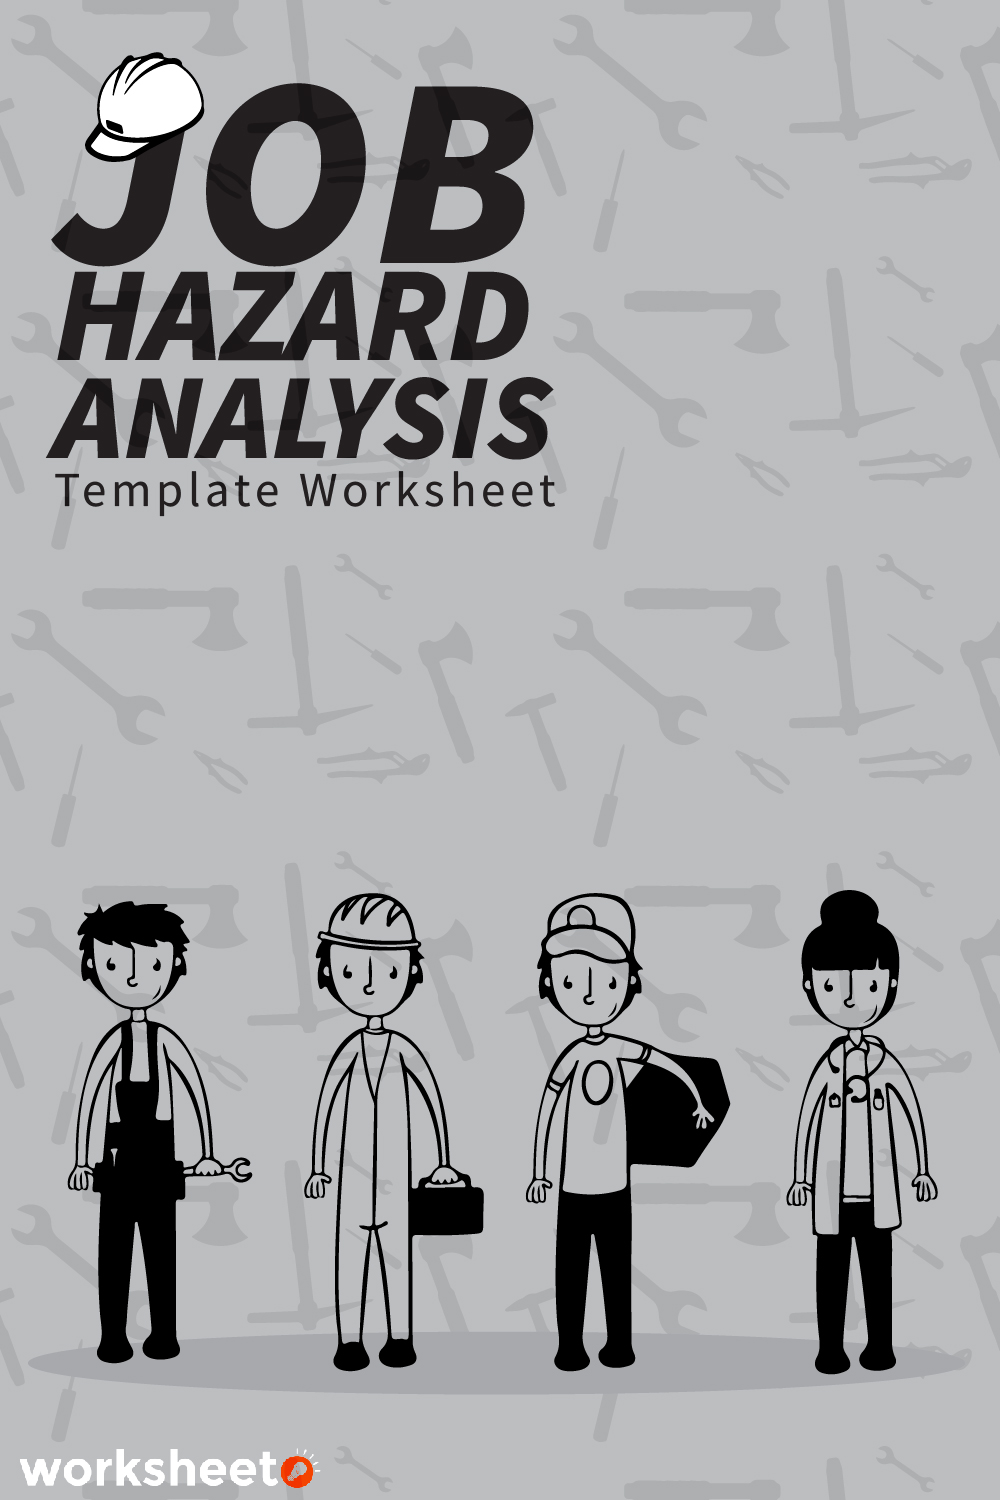 Job Hazard Analysis Template Worksheet